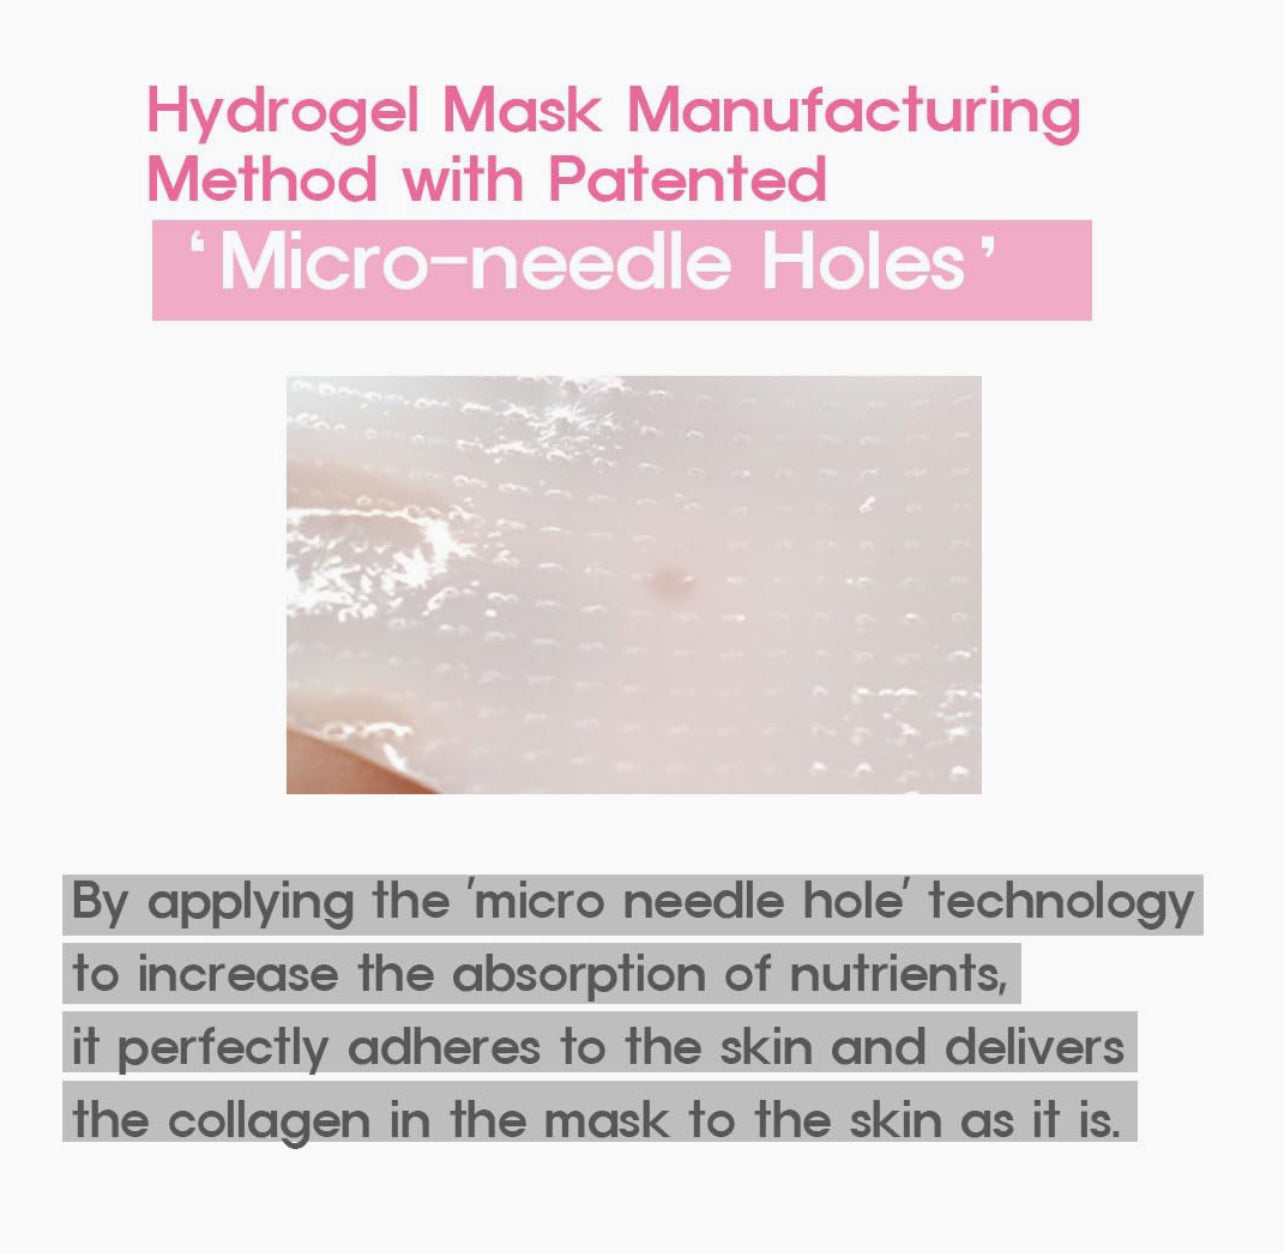 PrettySkin Collagen 400 Hydrogel Mask